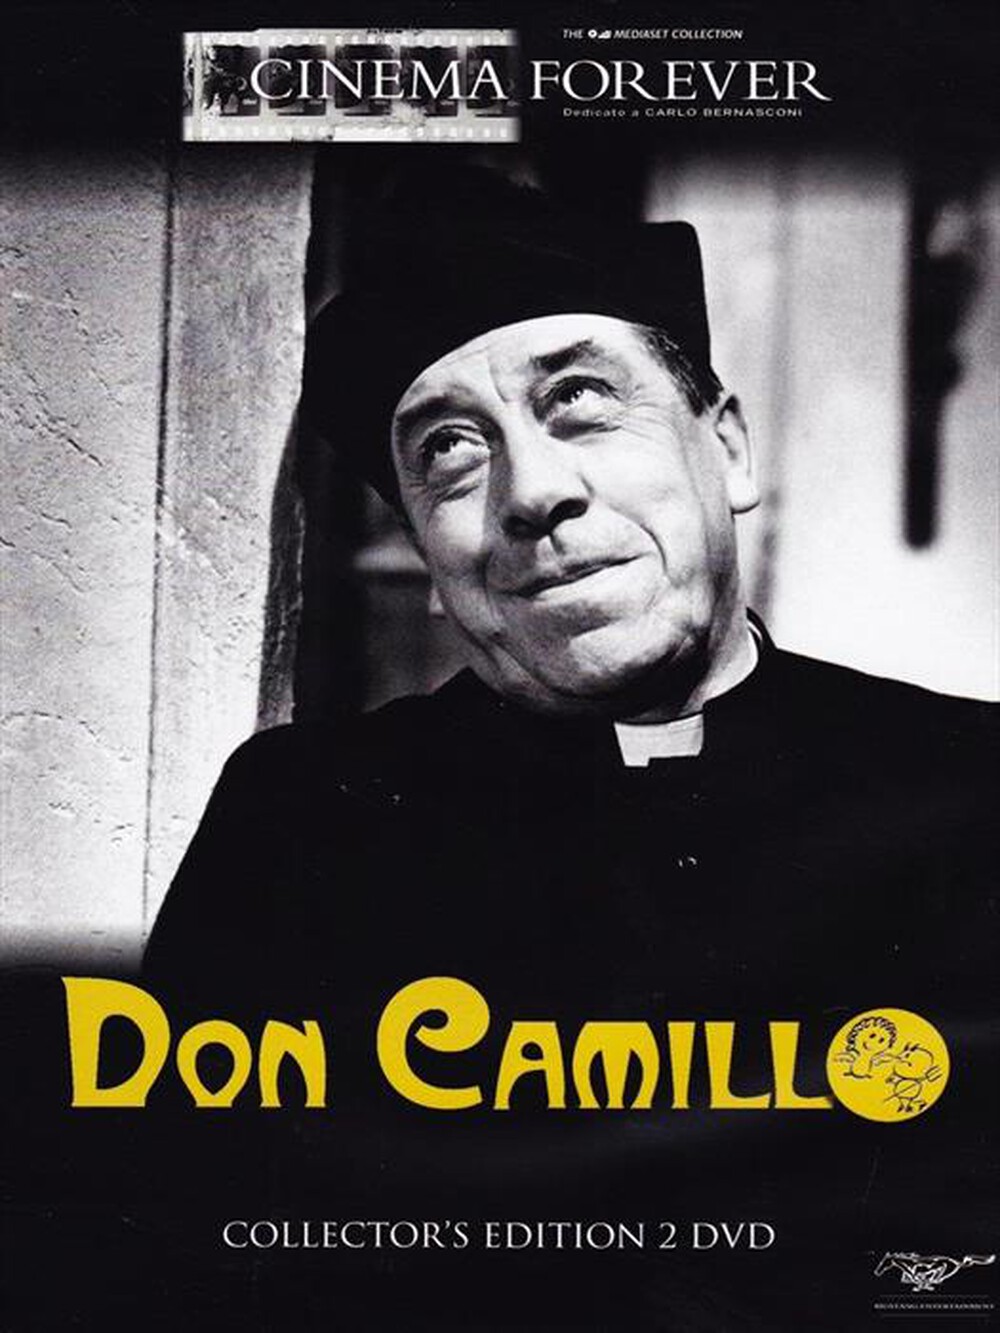 "CECCHI GORI - Don Camillo (CE) (2 Dvd)"